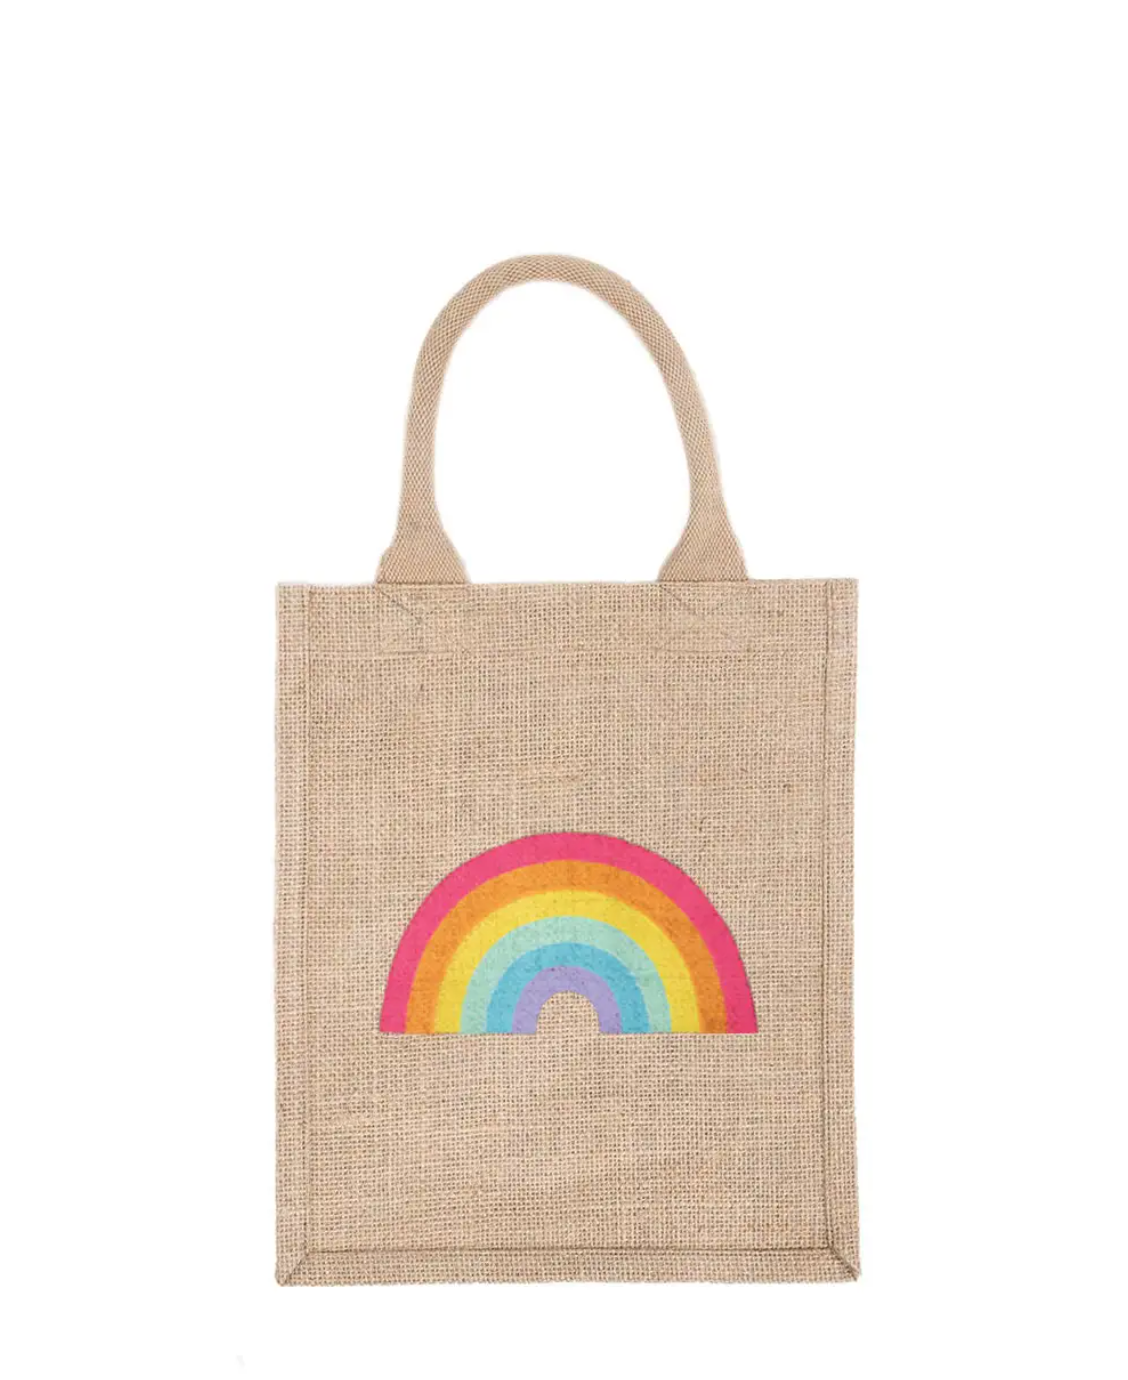 Reusable Gift Bag Tote - Rainbow